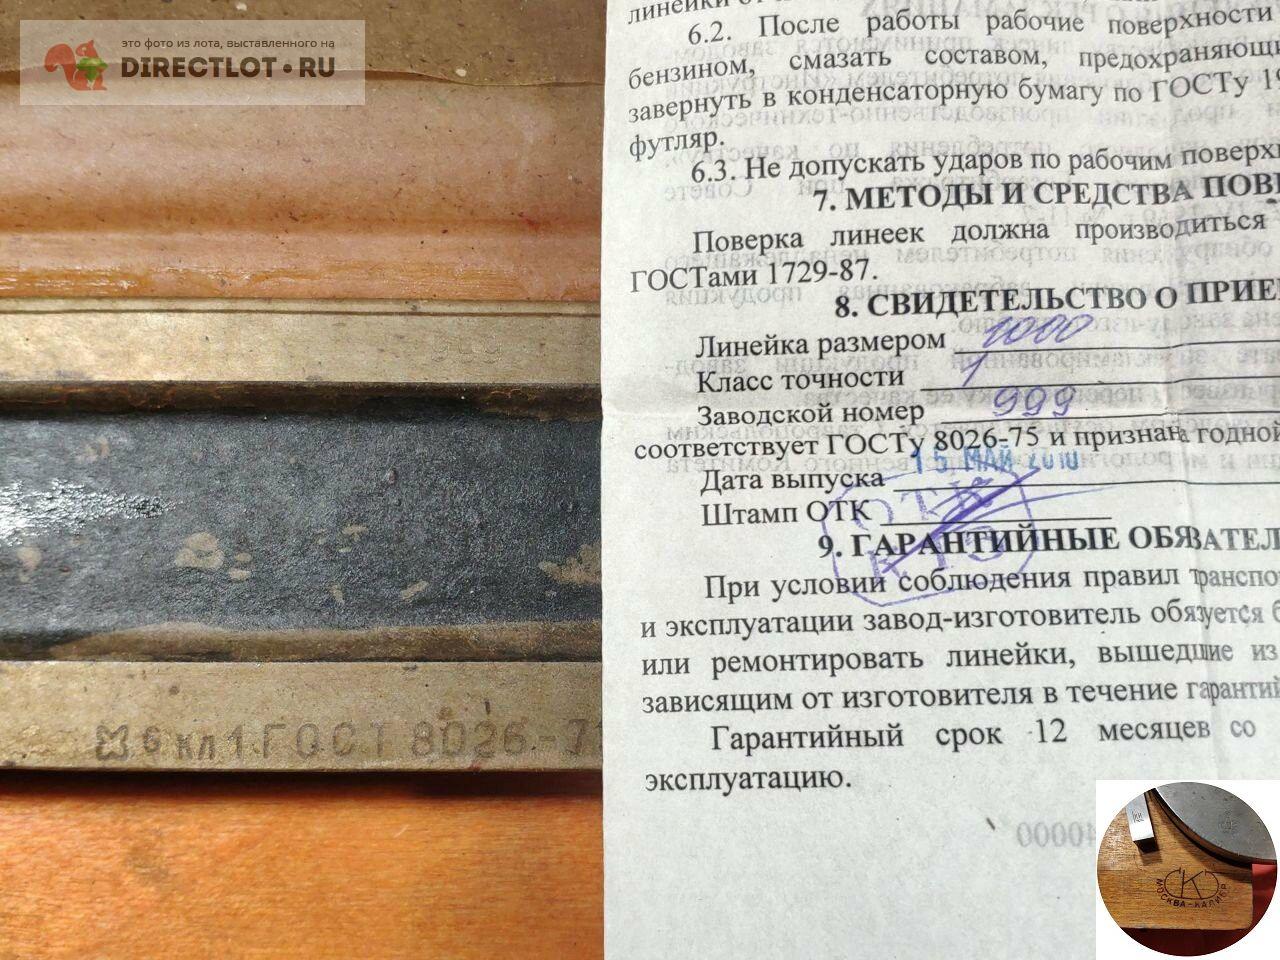  поверочная стиз шд-1000 кл.1  в Кирове цена 28000 Р на .